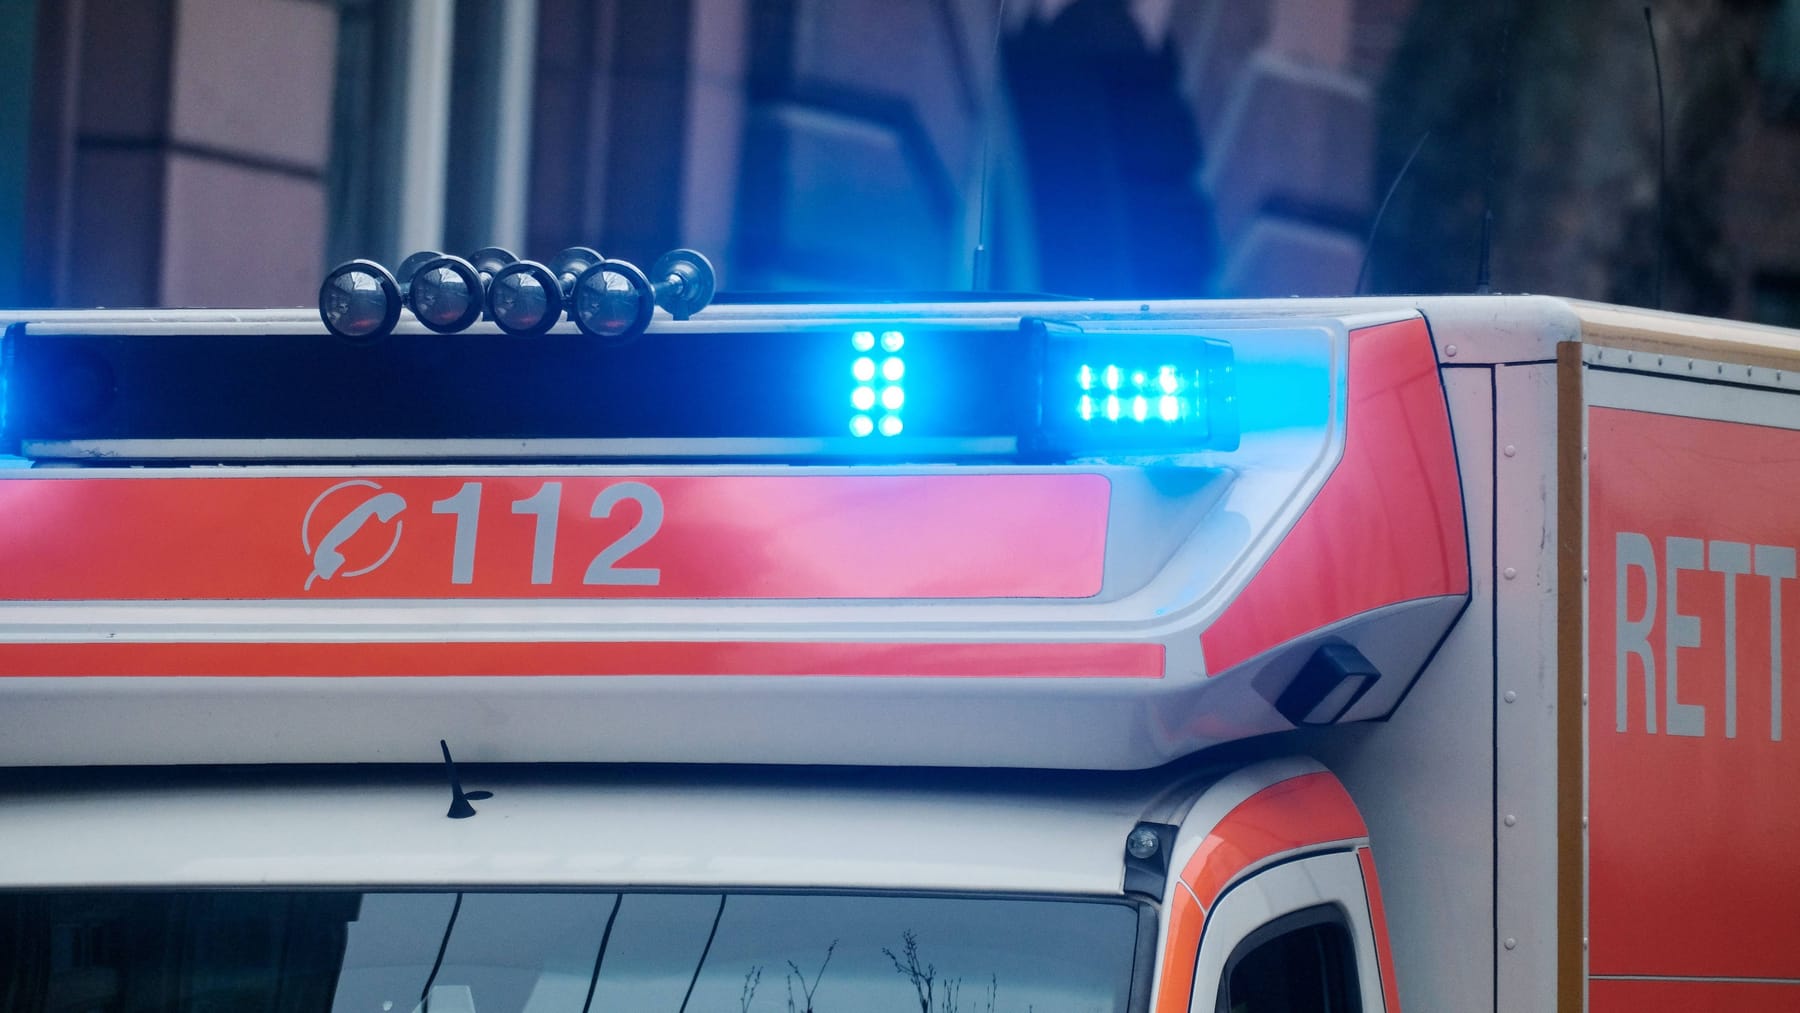  Blaulicht Sirene - Martinshorn Polizei Feuerwehr